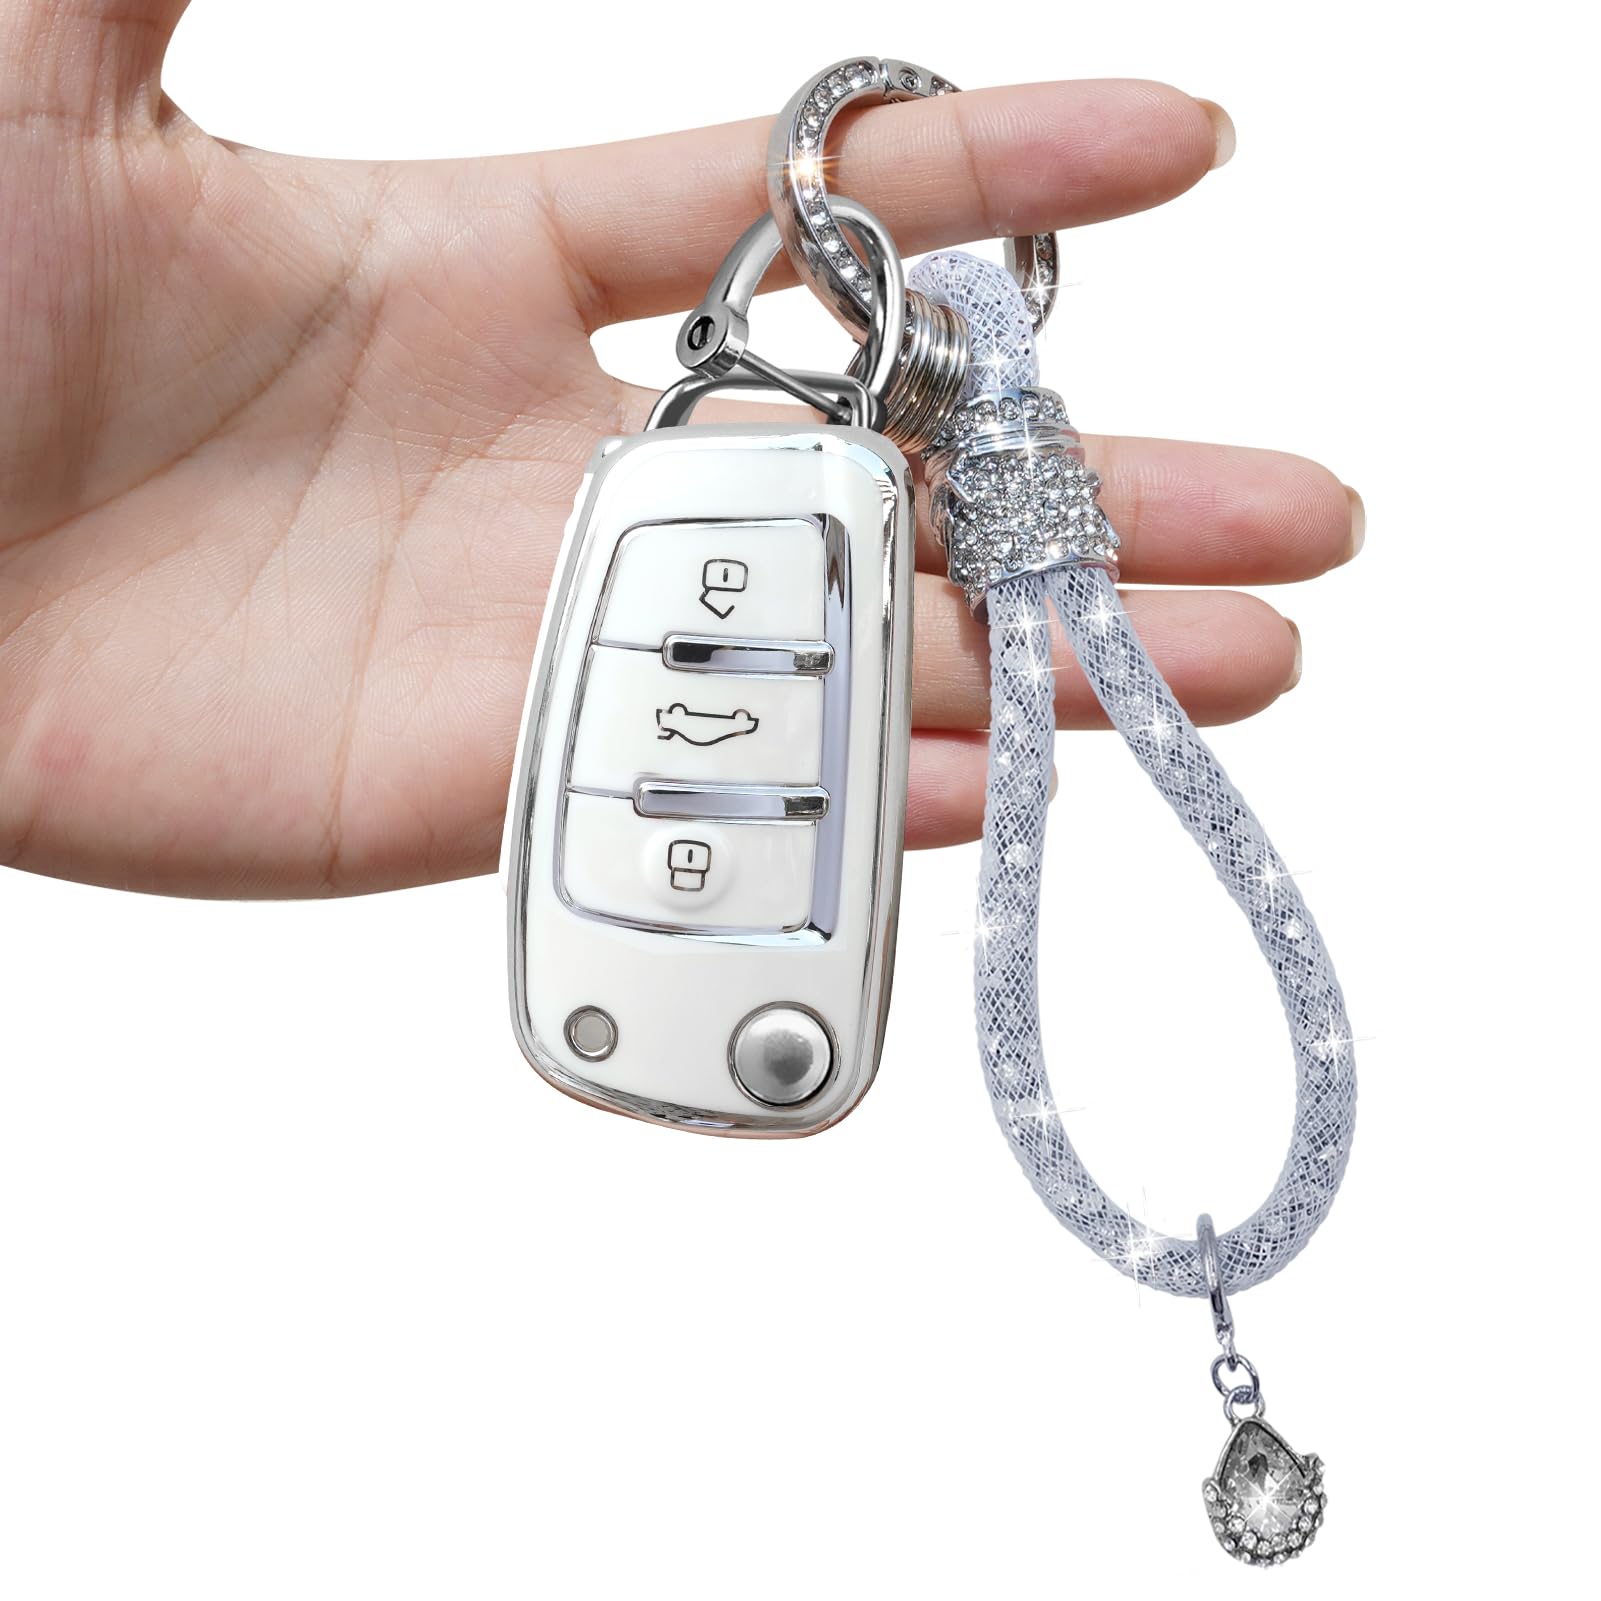 Yumzeco 3 Tasten Silicone TPU Autoschlüssel Hülle Cover mit glänzendem Diamant Schlüsselband, Kompatibel mit Audi A1 A3 A4 A5 A6 Q3 Q5 Q7 S3 S4 RS5 RS6 TT, Auto Keyless Smartkey Schutzhülle-Weiß von Yumzeco